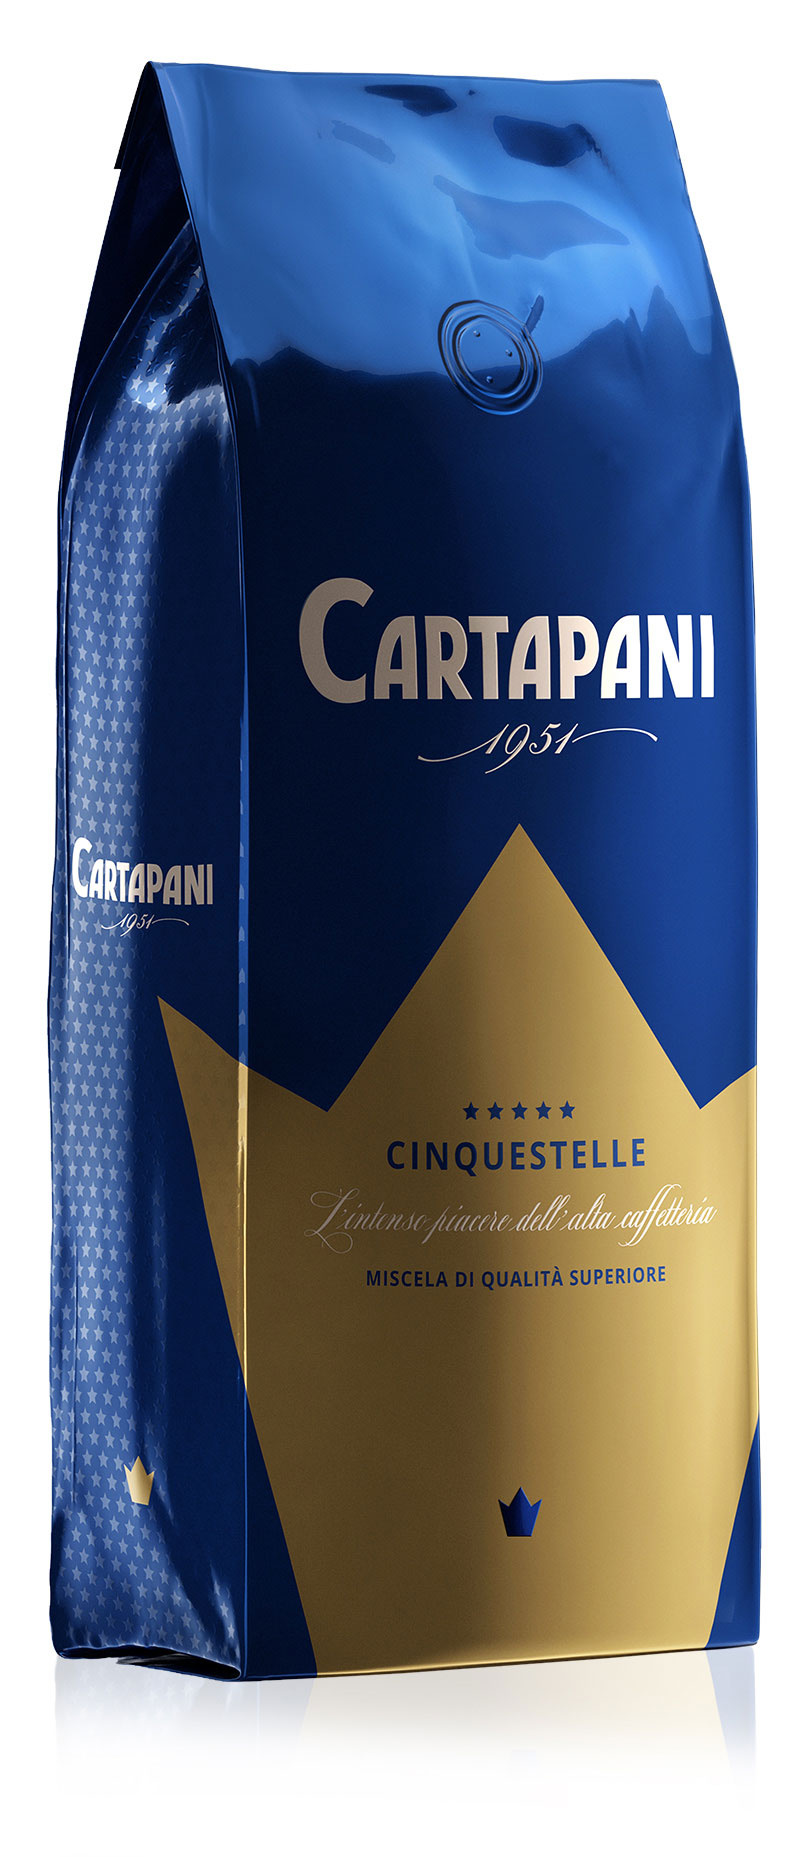 CINQUESTELLE - Cartapani